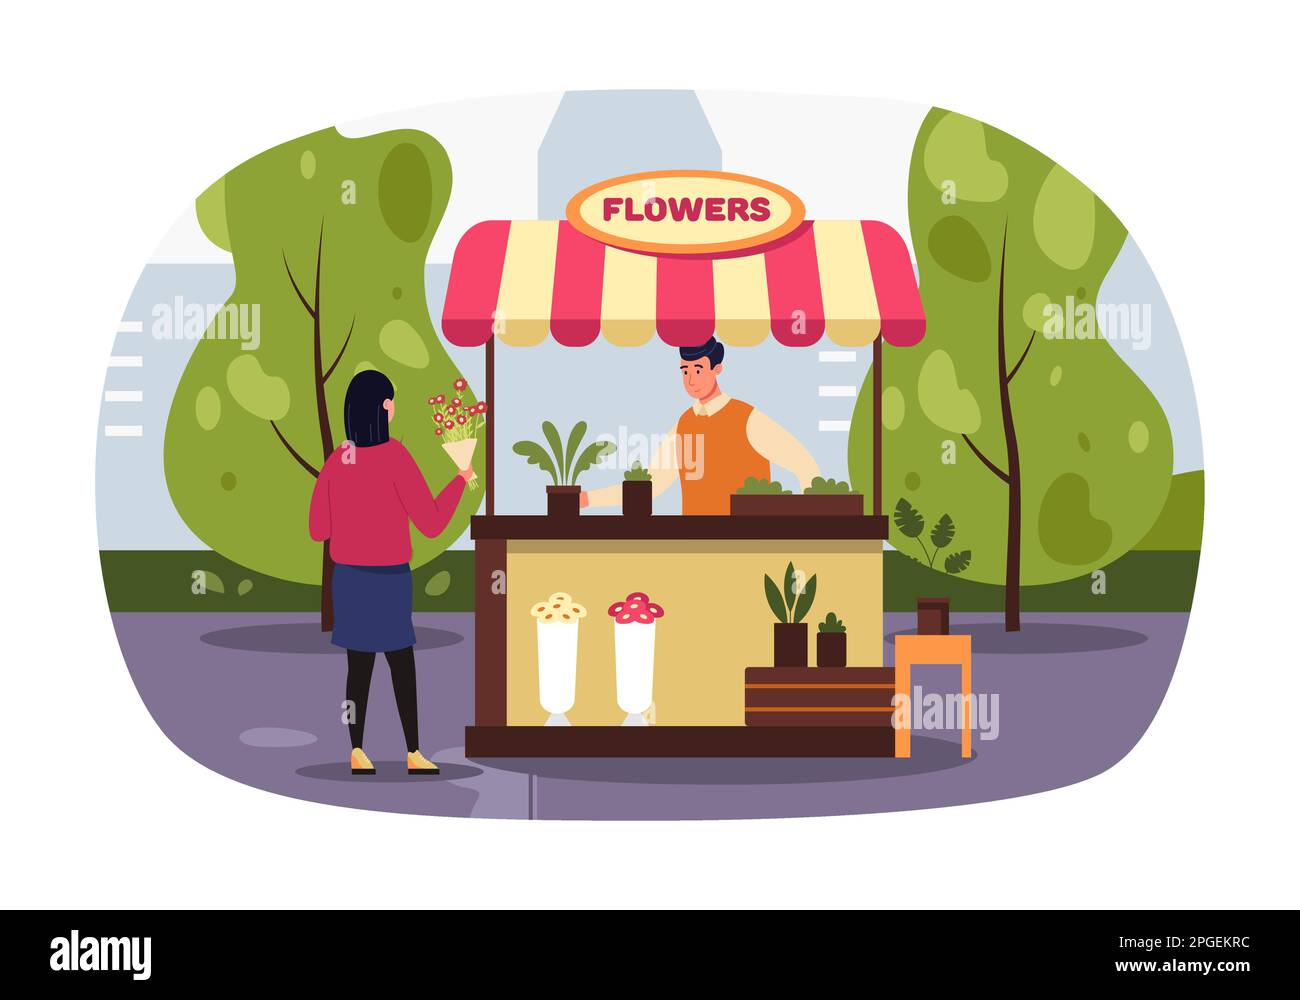 Eine Frau, die Blumen in einem Kiosk kauft. Vektor der Straßendarstellung, Blume, Verkäufer für Kiosk Stock Vektor